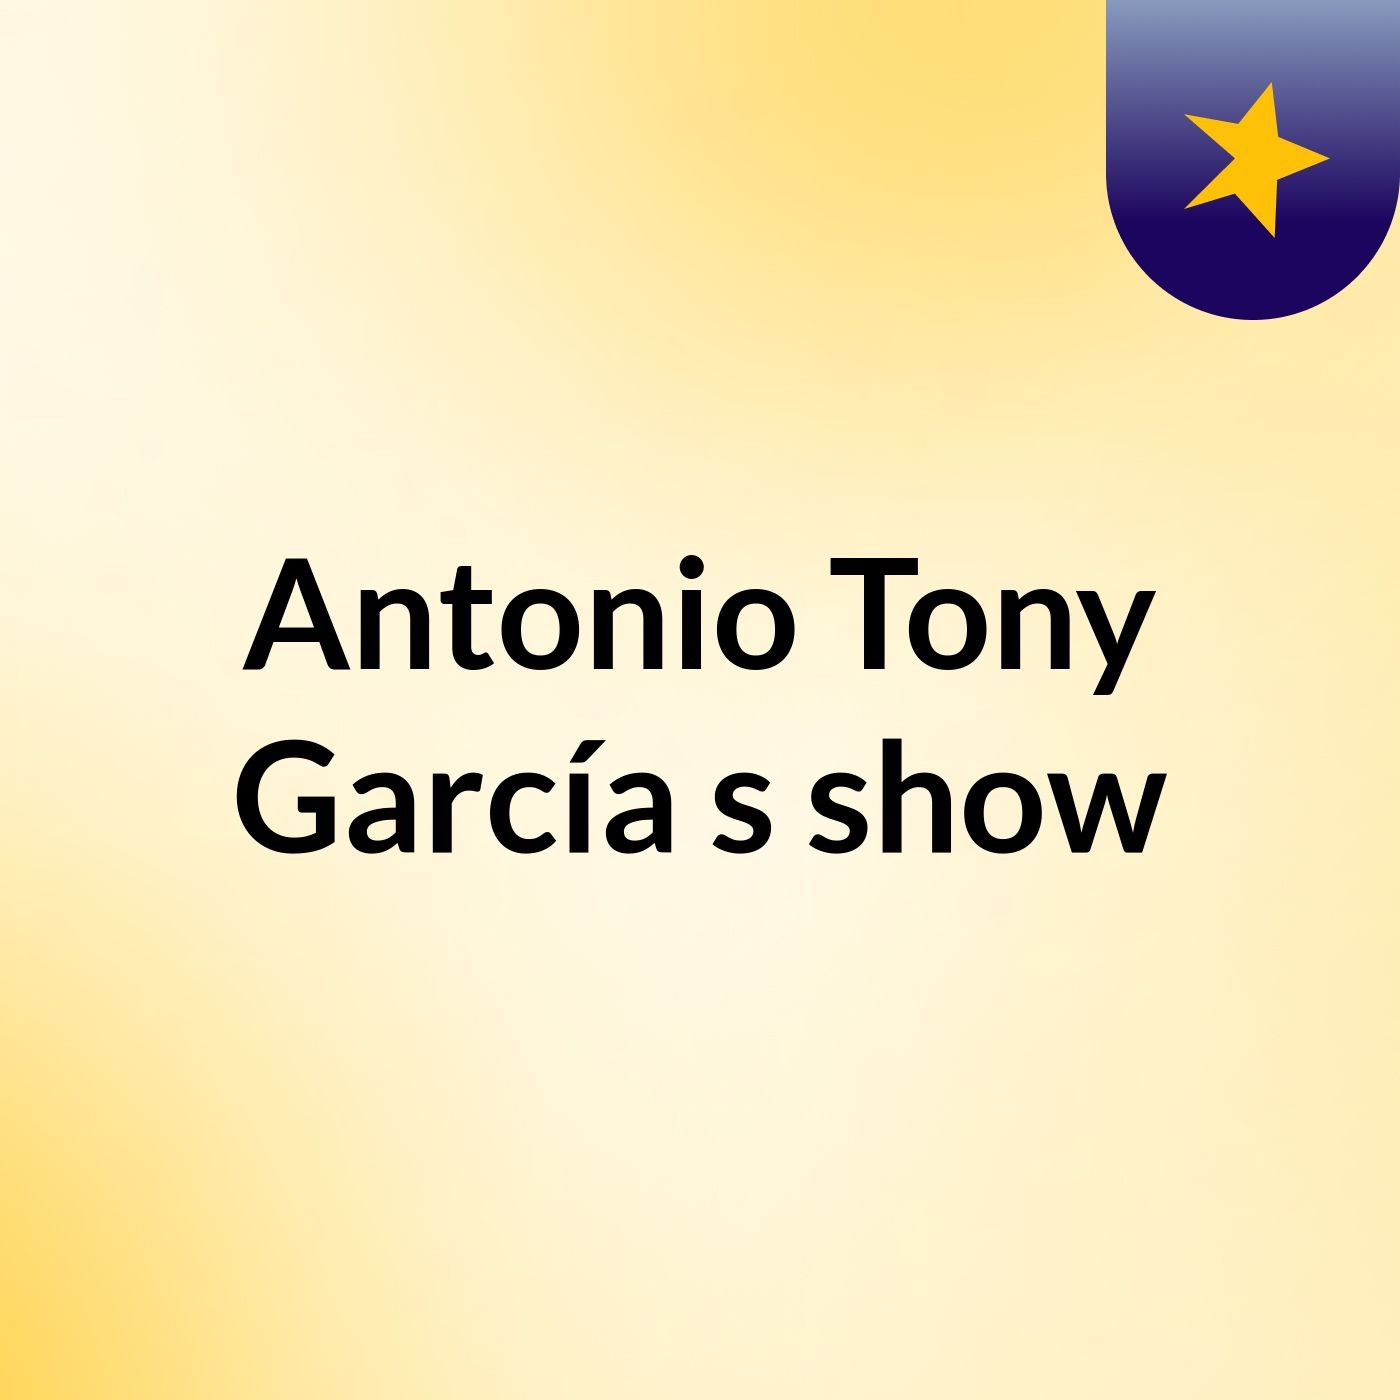 Antonio Tony García's show